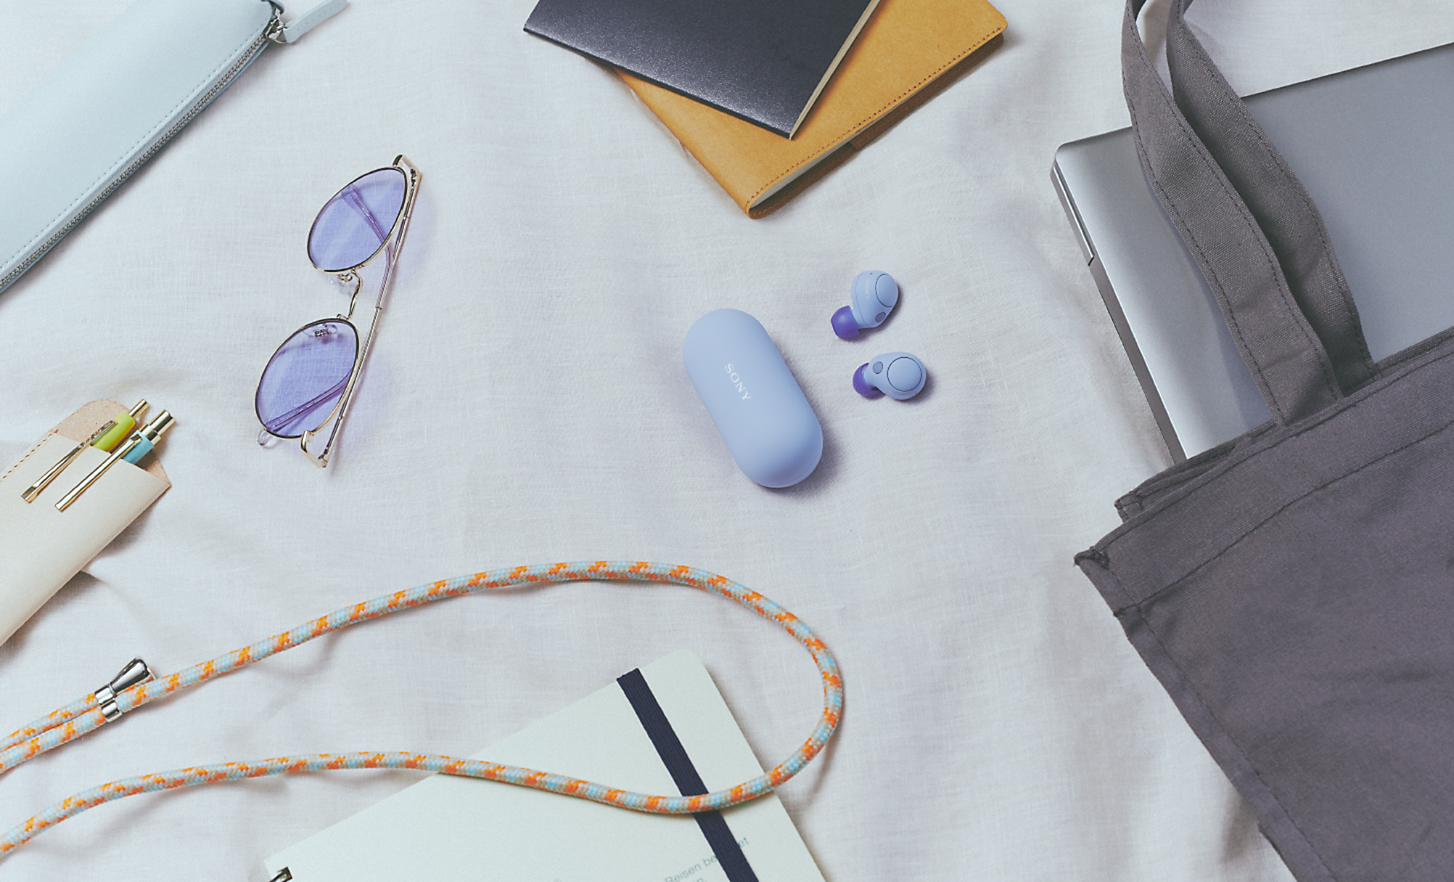 Abbildung der lavendelfarbenen WF-C700N Kopfhörer mit Etui, umgeben von Alltagsgegenständen wie einem Notebook, einer Tasche und einer Sonnenbrille